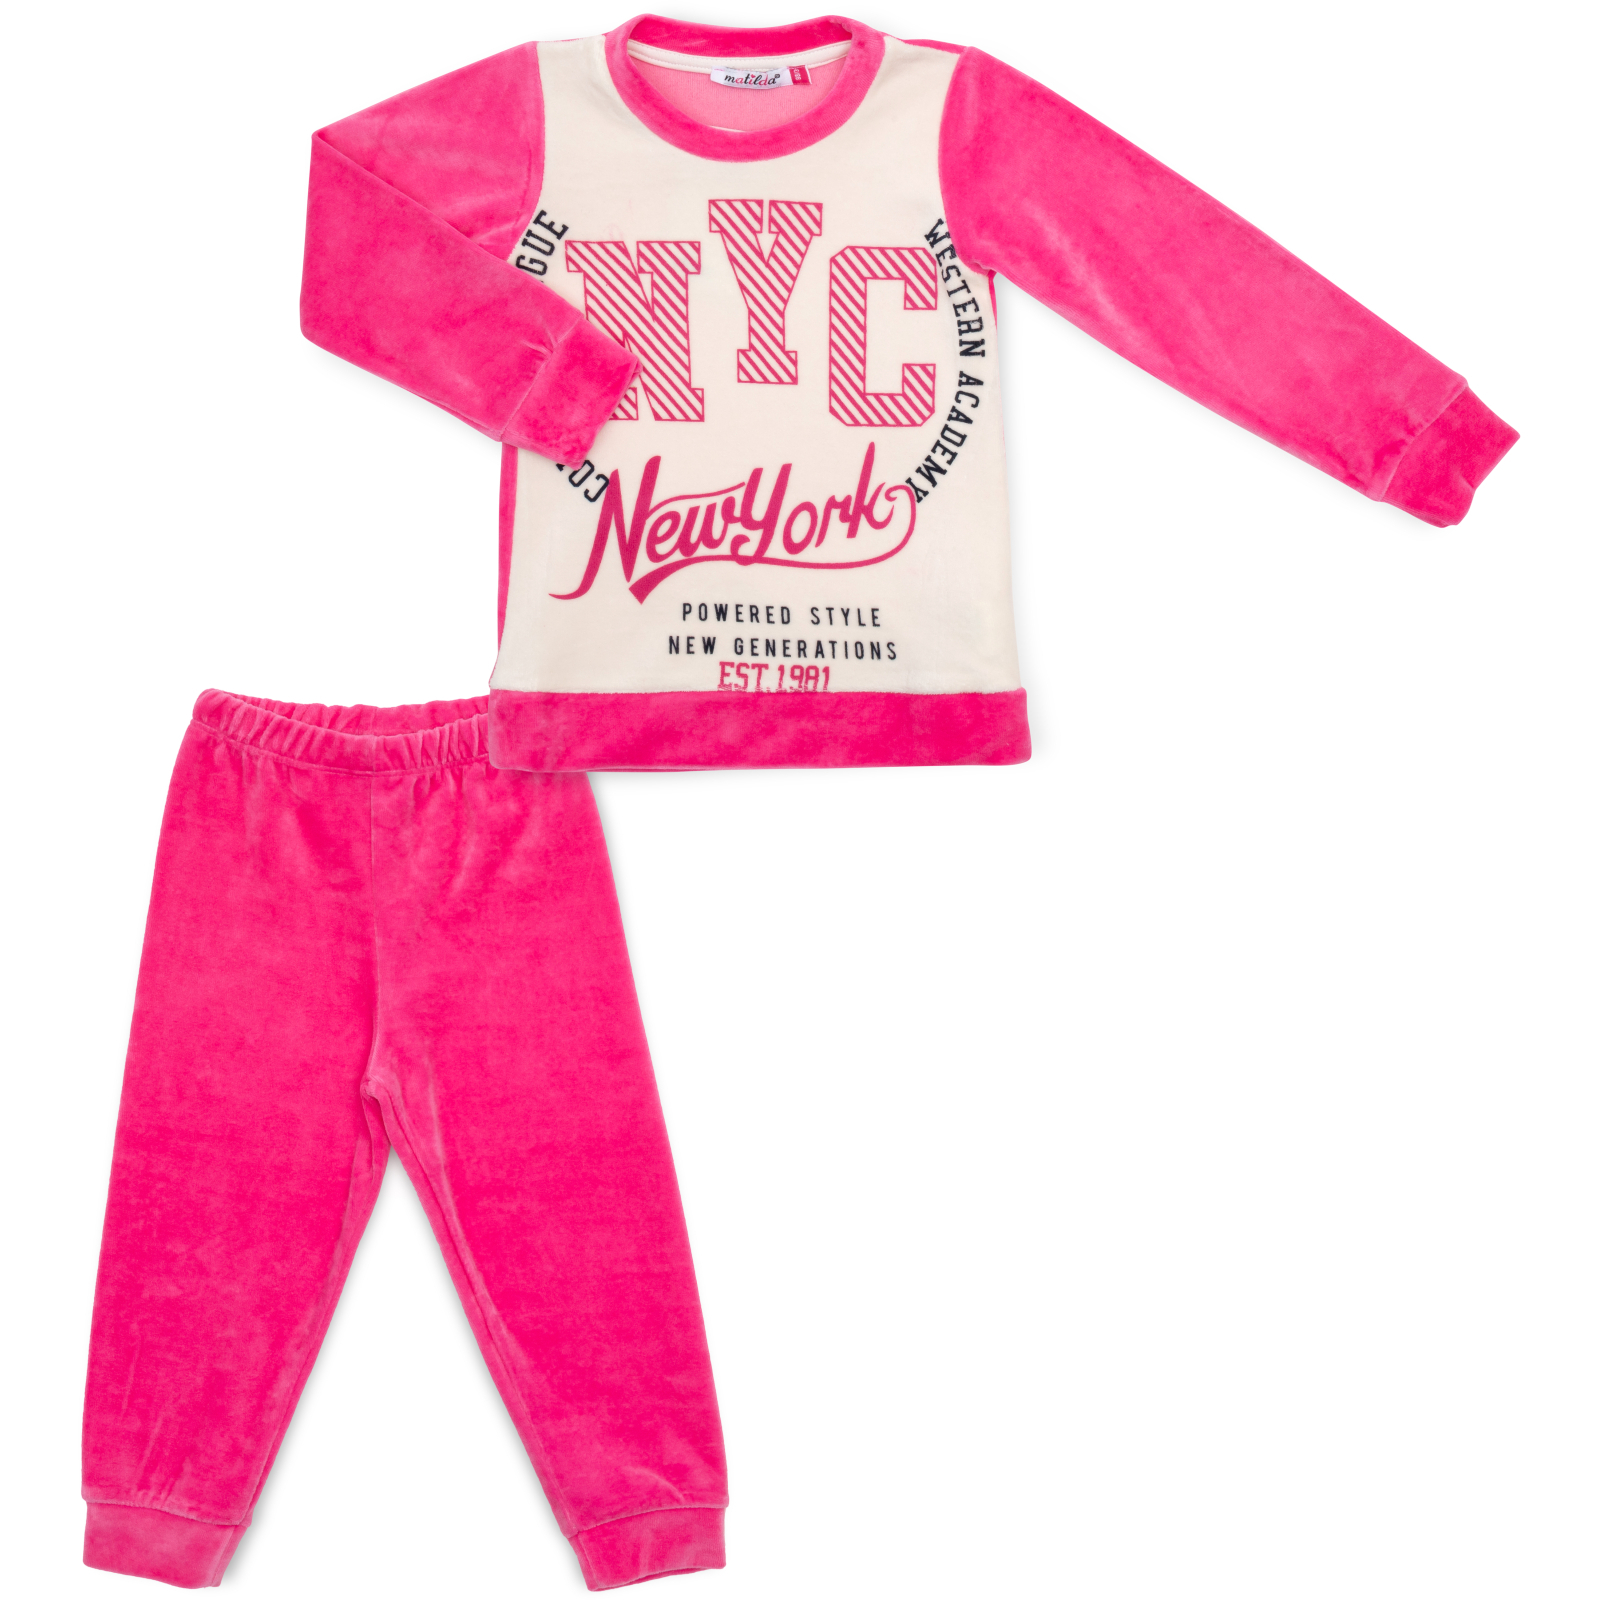 Пижама Matilda велюровая (7571-3-134G-pink)